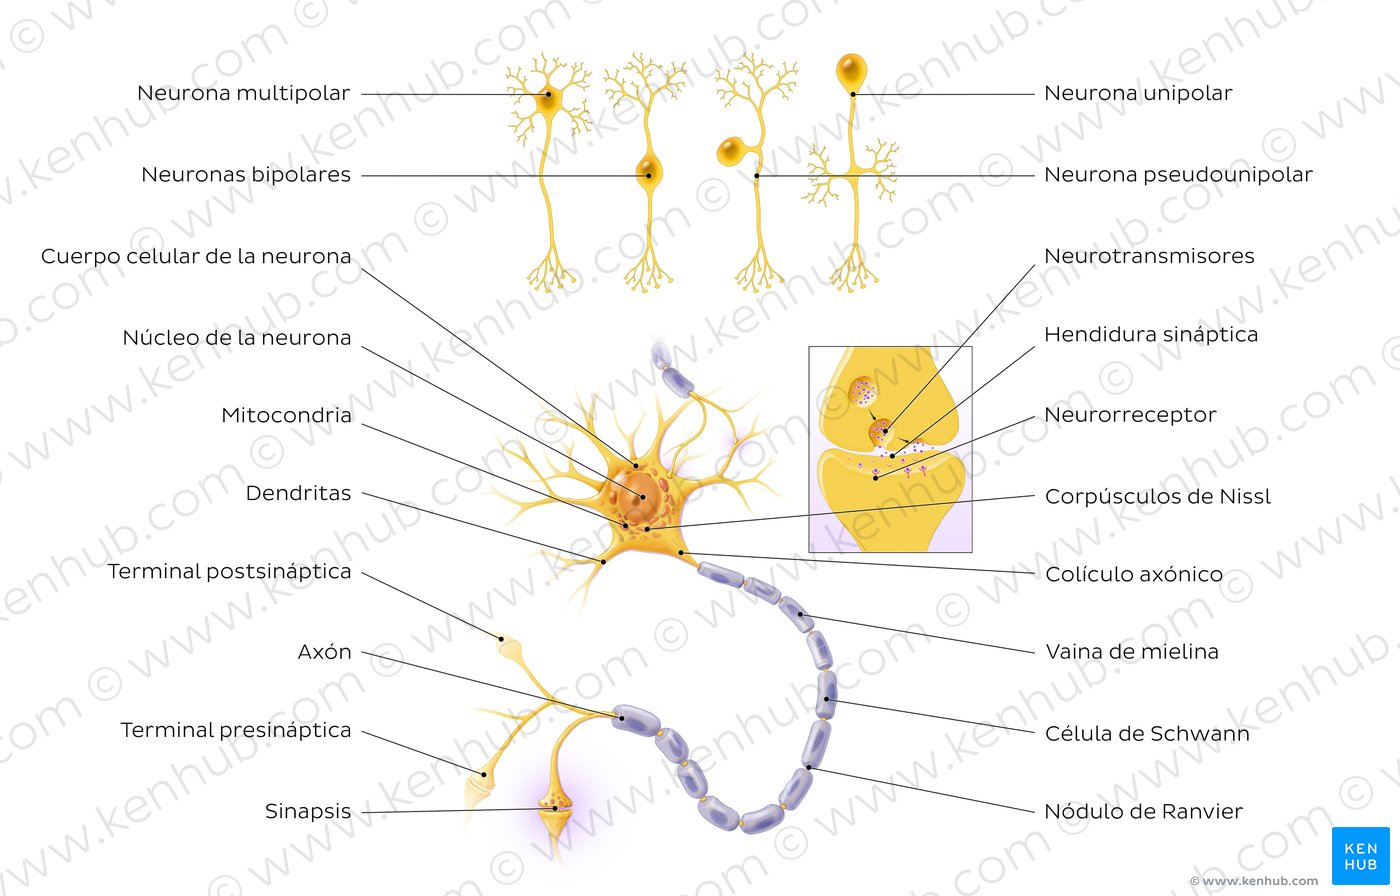 Morfología de la neurona unipolar